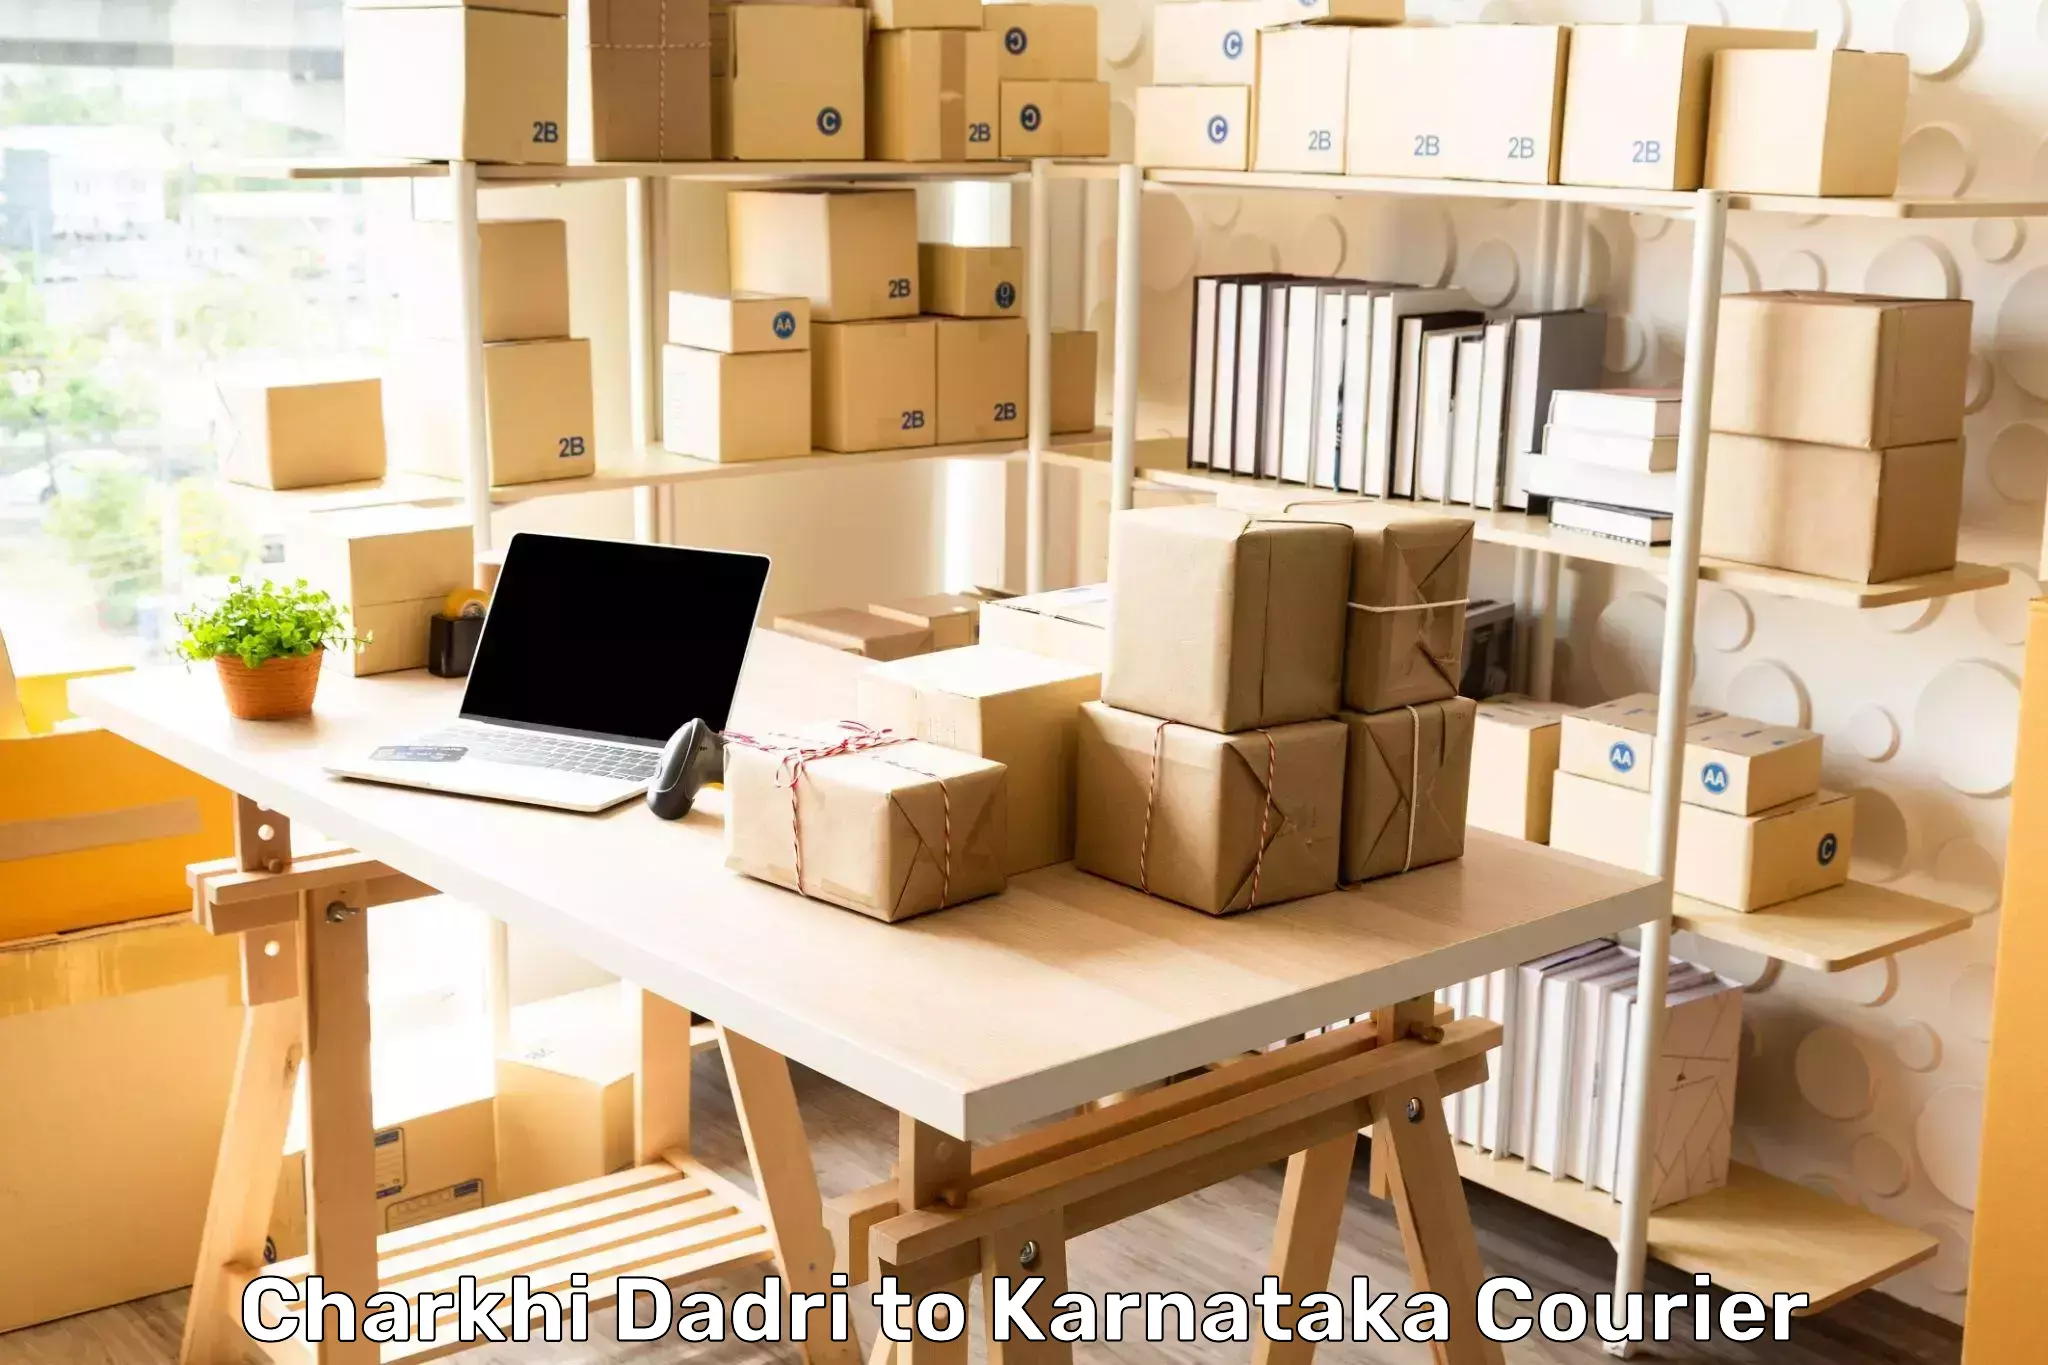 Door-to-door freight service Charkhi Dadri to Karnataka